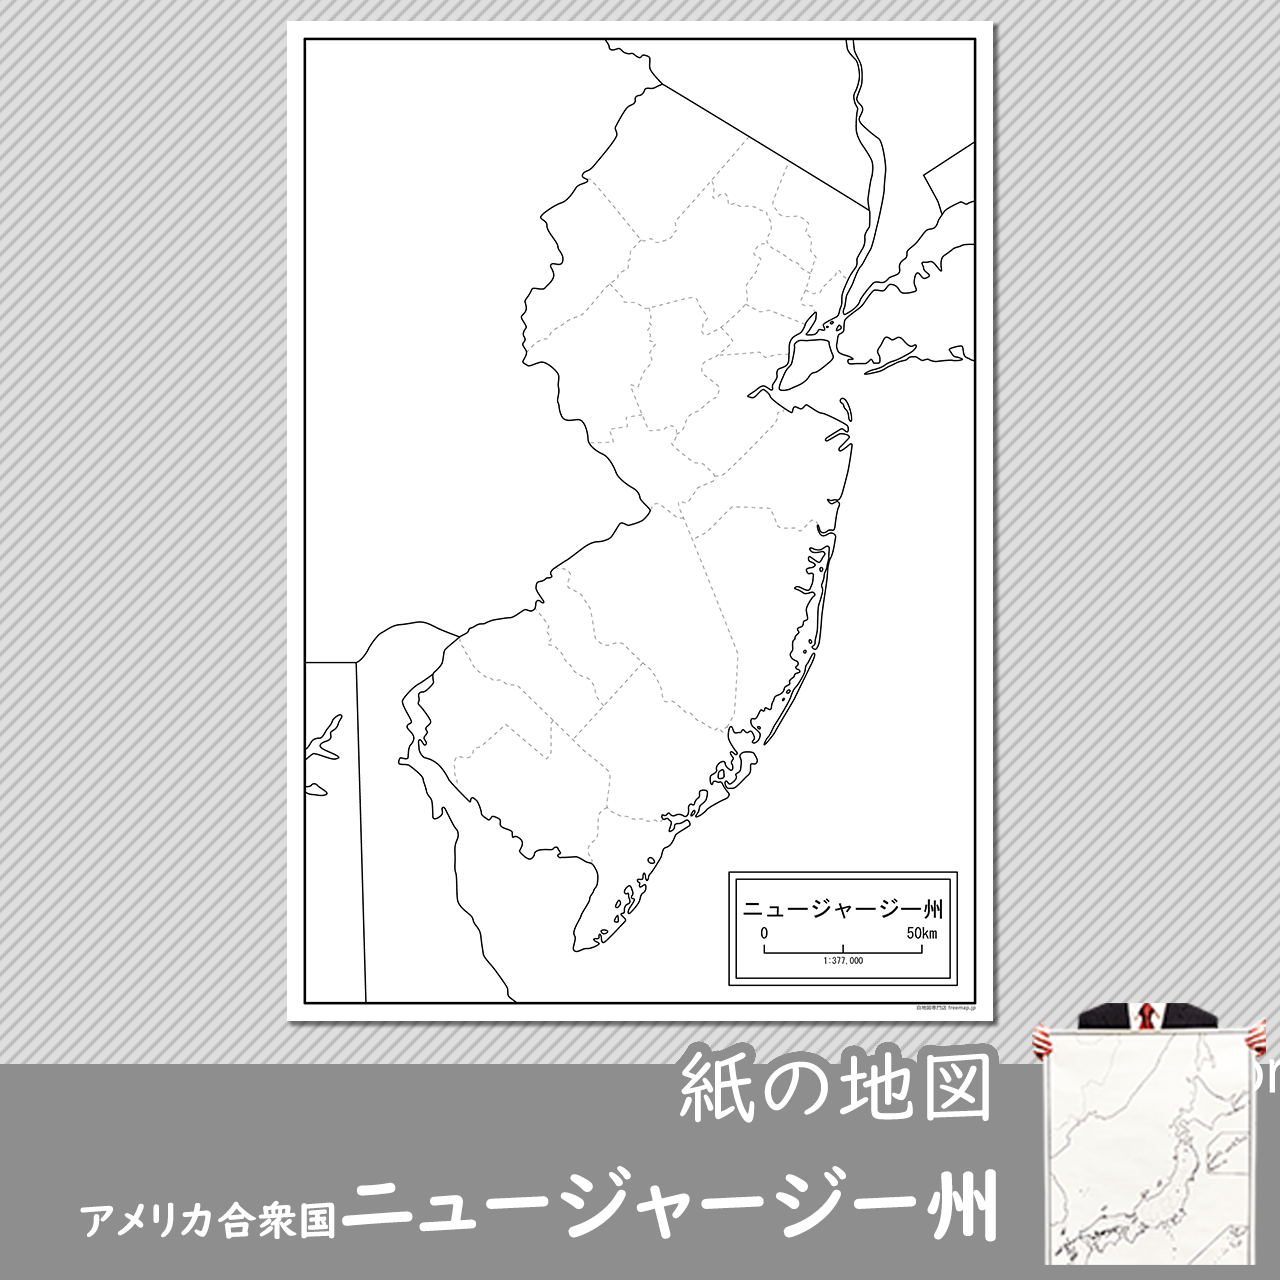 ニュージャージー州の紙の白地図のサムネイル